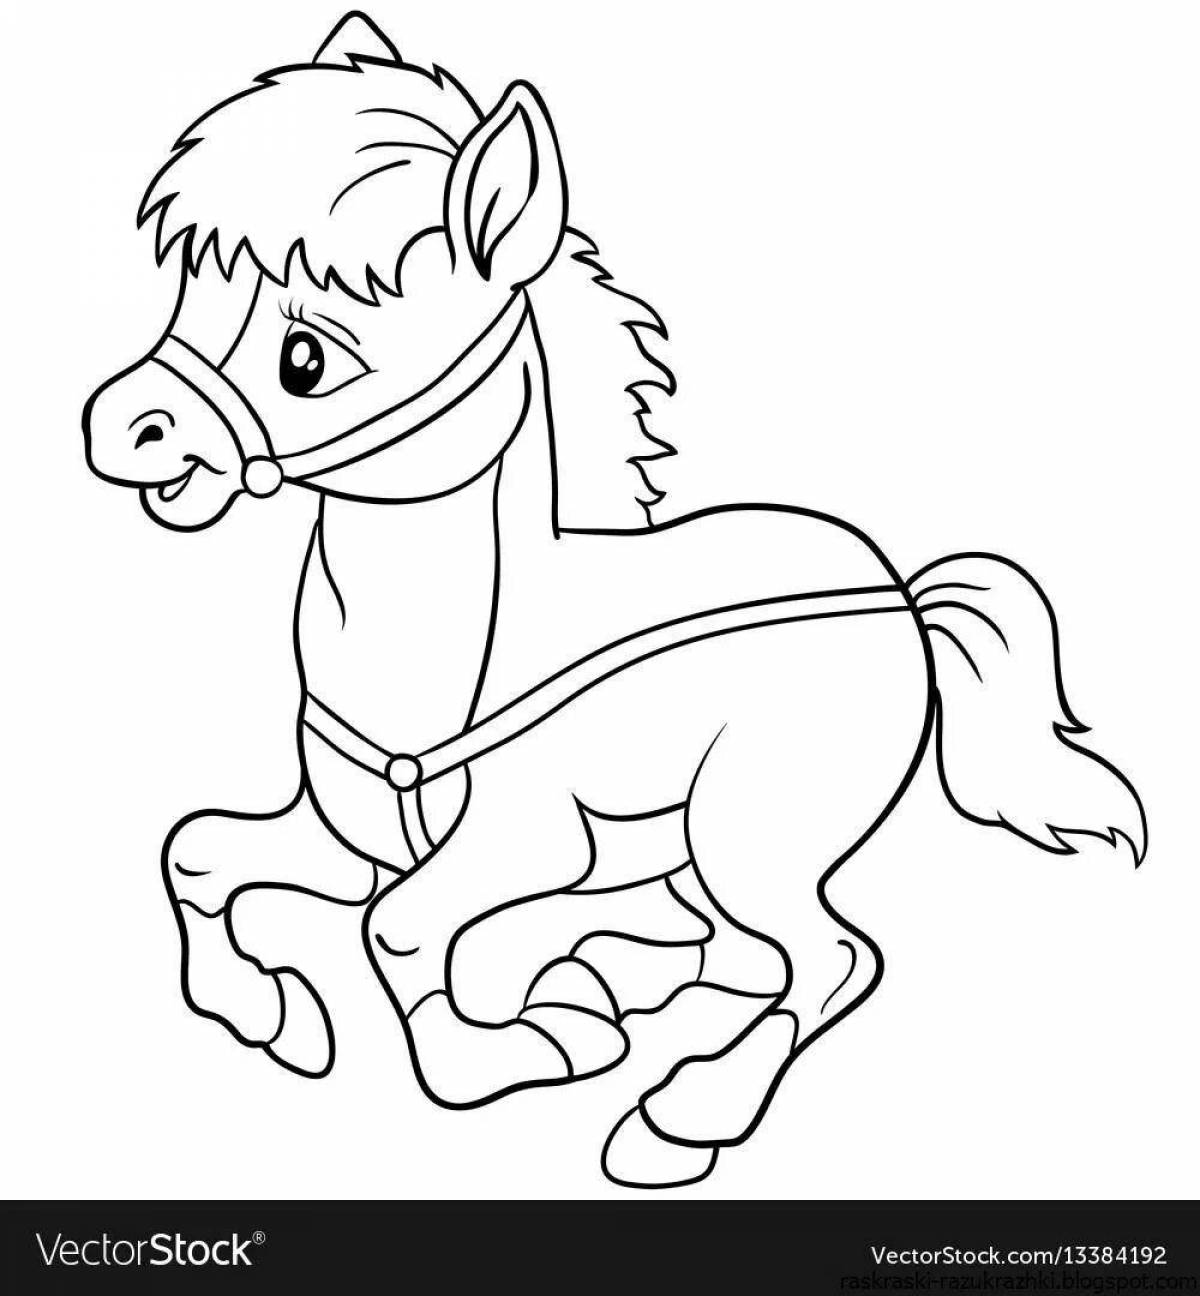 Причудливая раскраска лошадь для детей 6-7 лет